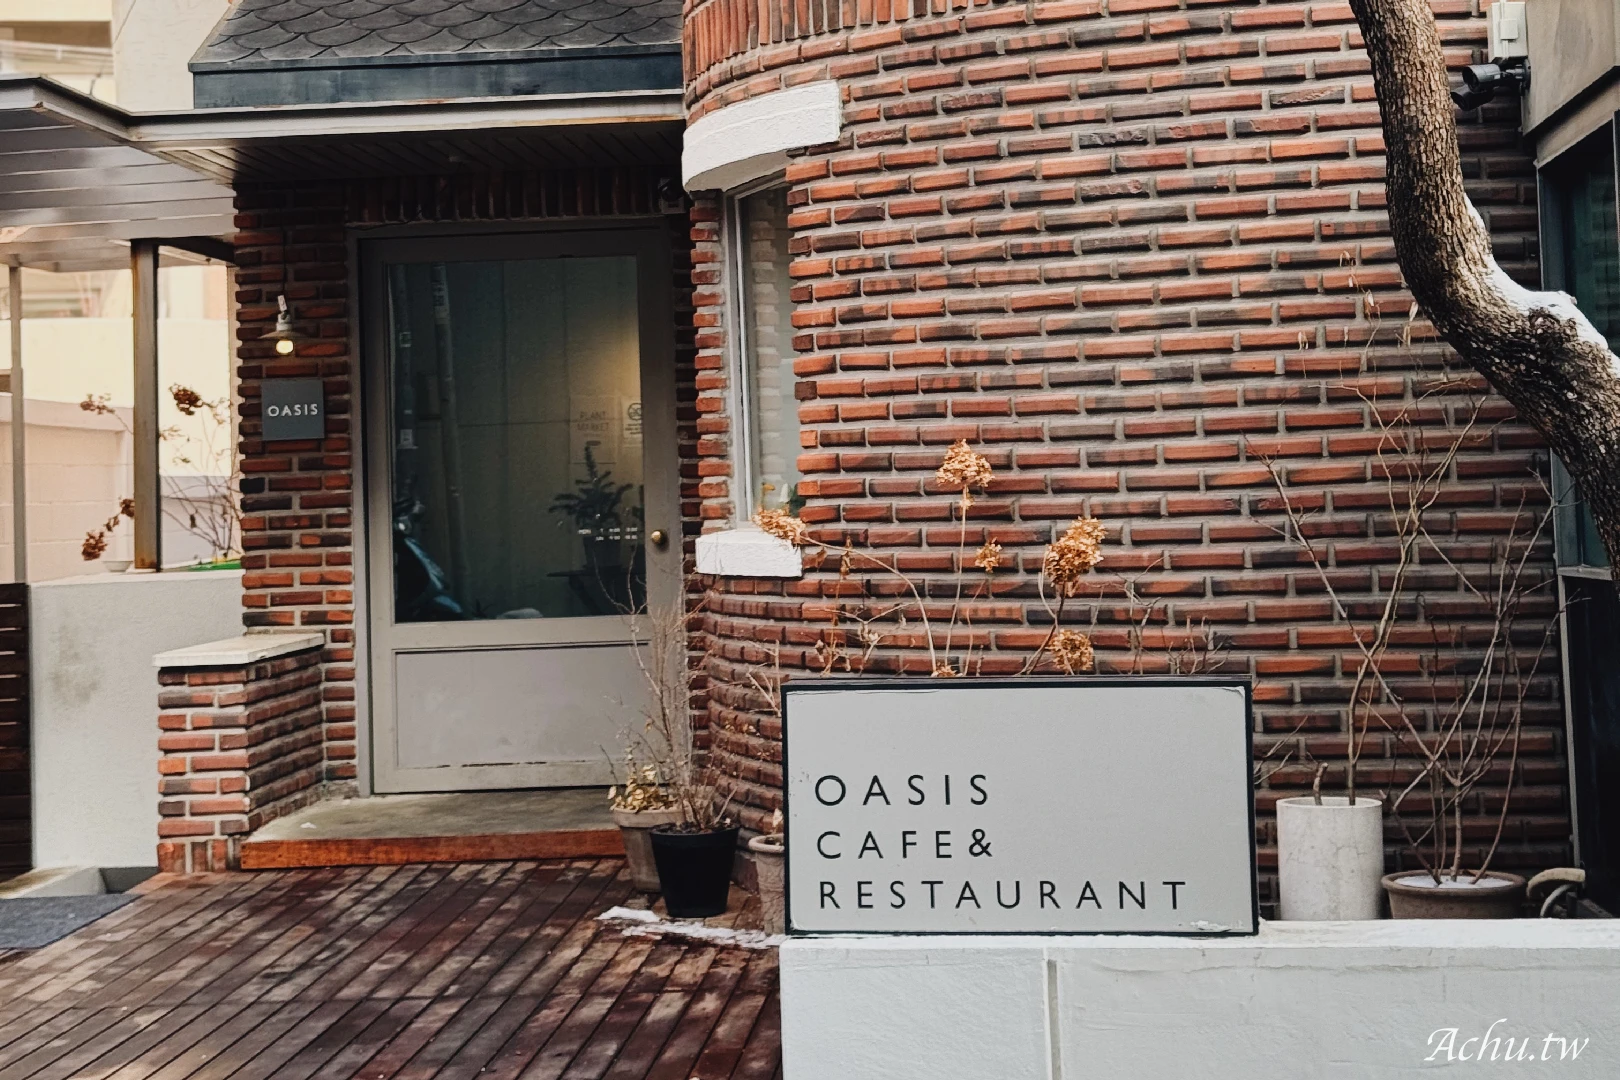 Oasis Cafe & Restaurant